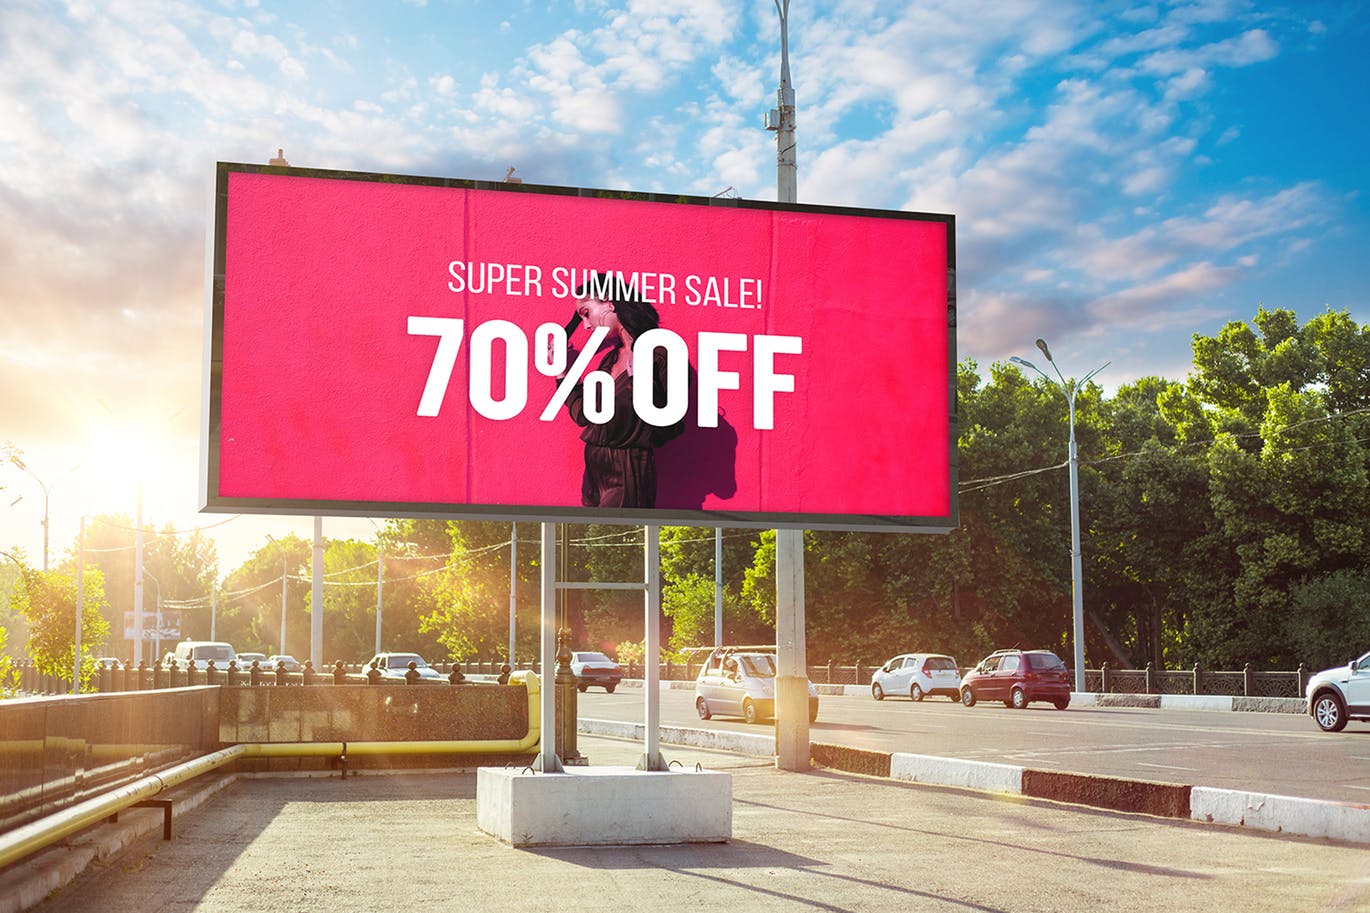 户外公路大型广告牌广告设计展示效果图样机 Advertising Billboard Mockup插图(4)